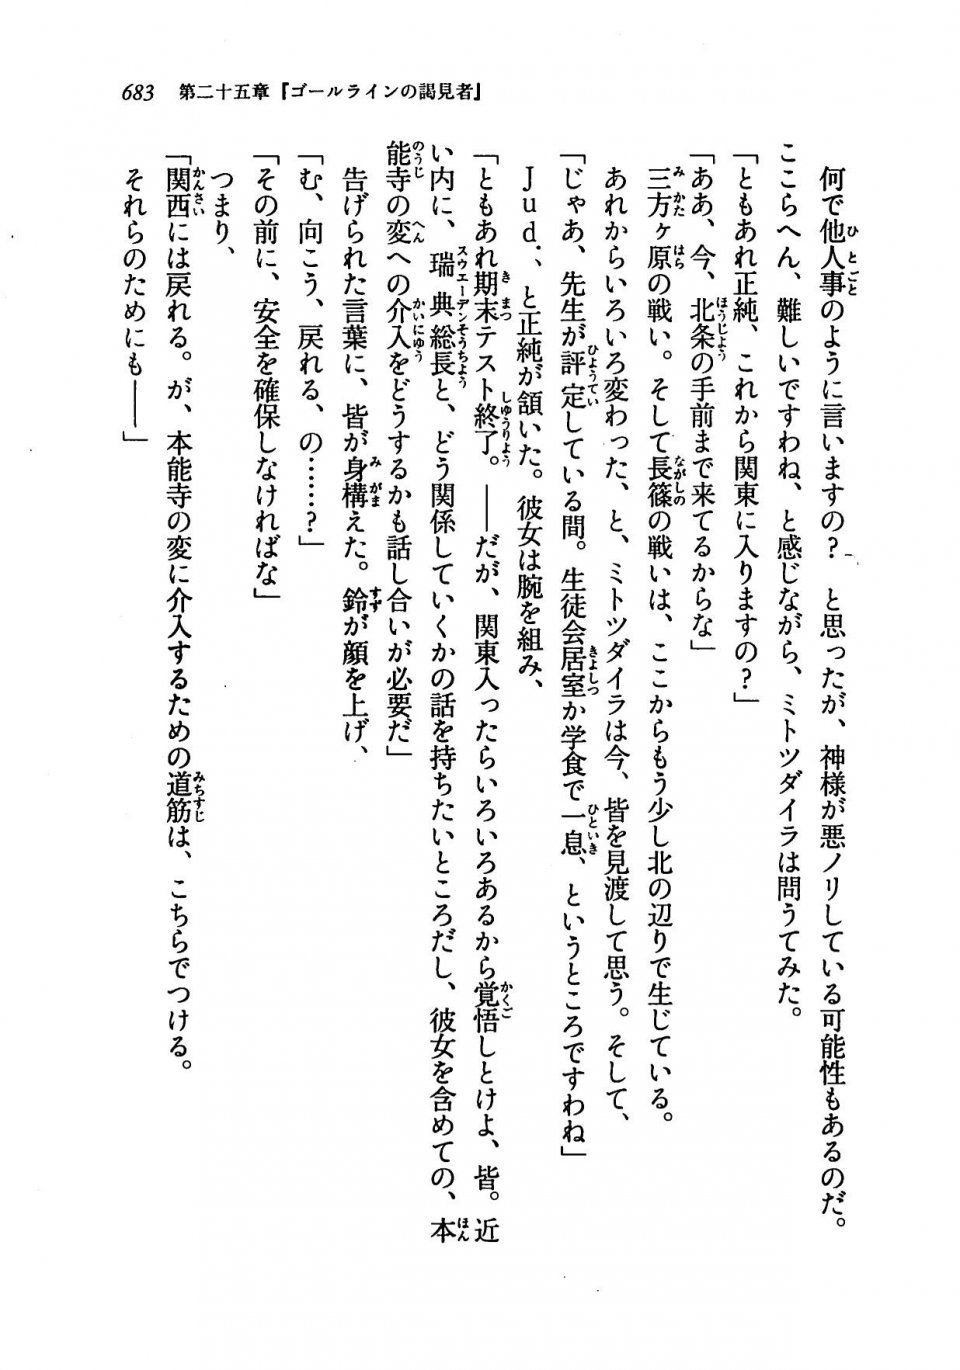 Kyoukai Senjou no Horizon LN Vol 19(8A) - Photo #683